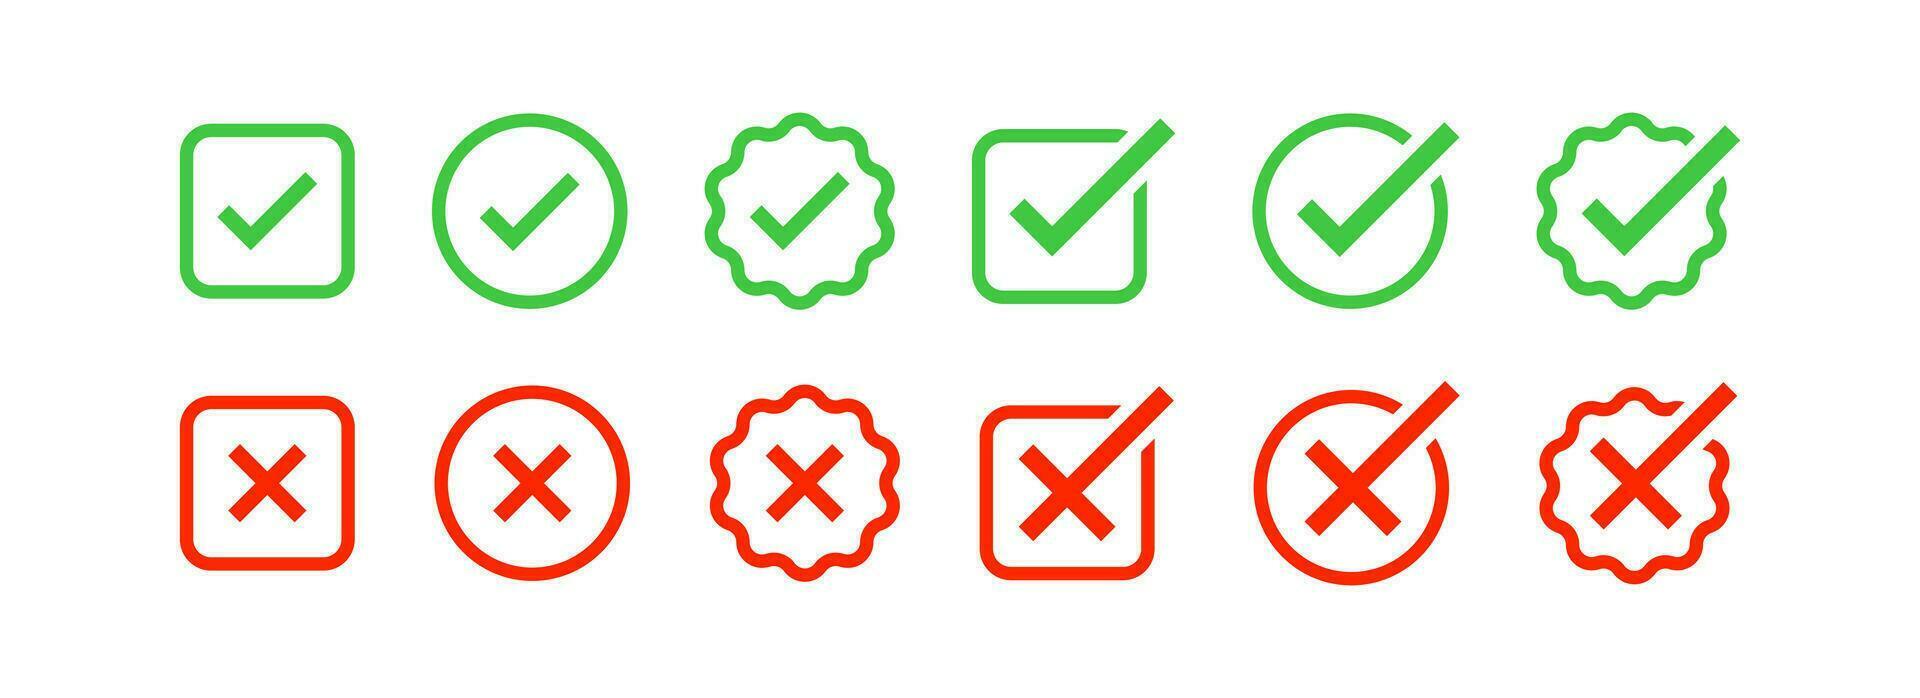 kolla upp mark ikon. fel symbol. korrekt i kryssruta tecken. x element symboler. Avbryt, acceptera i cirkel ikoner. grön, blå Färg. vektor tecken.